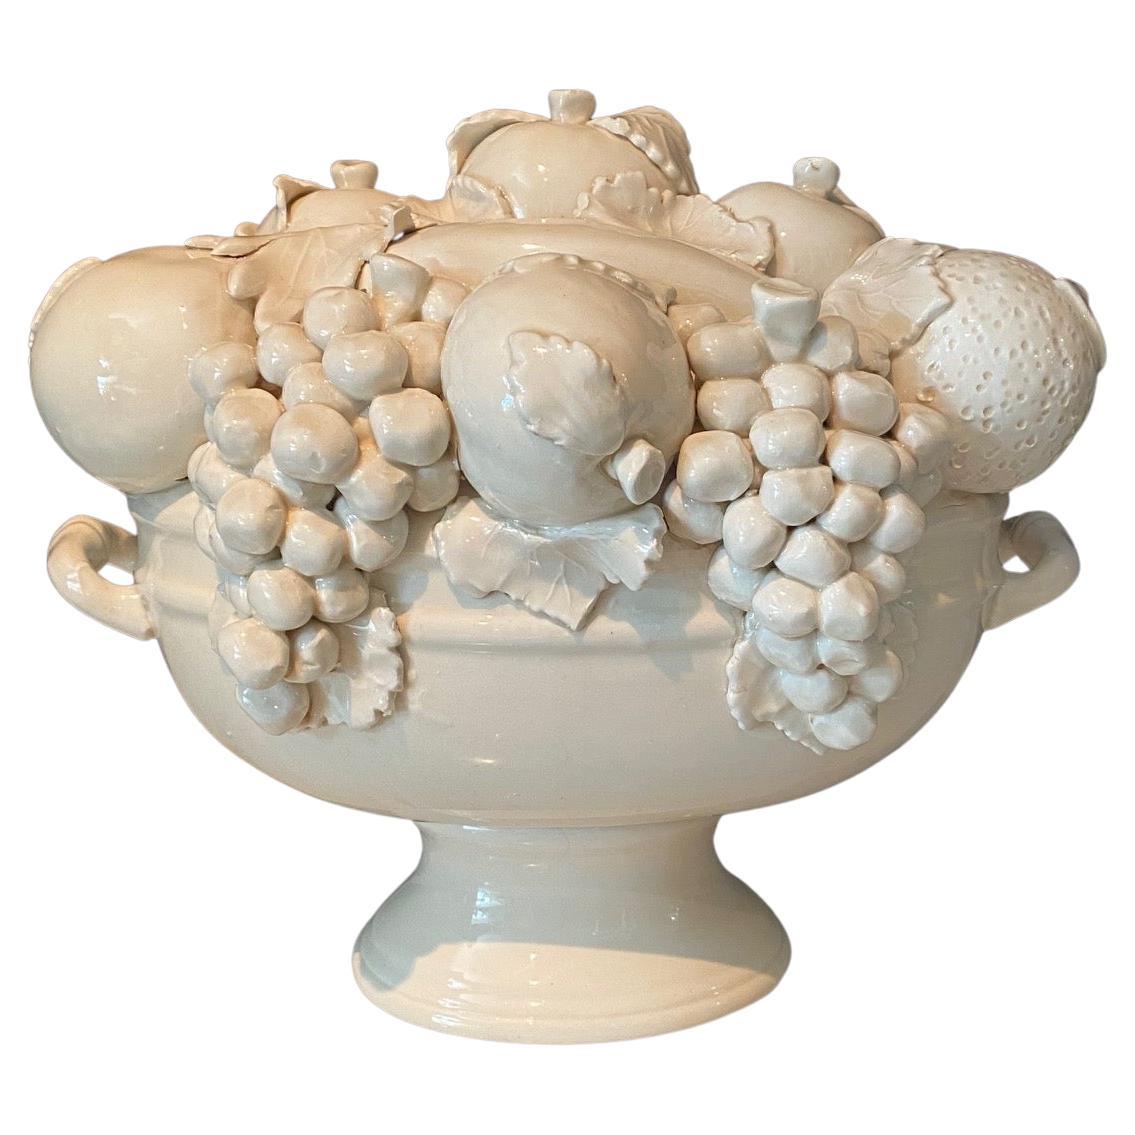 Grand centre de table italien ancien en porcelaine blanche en forme de corne d'abondance